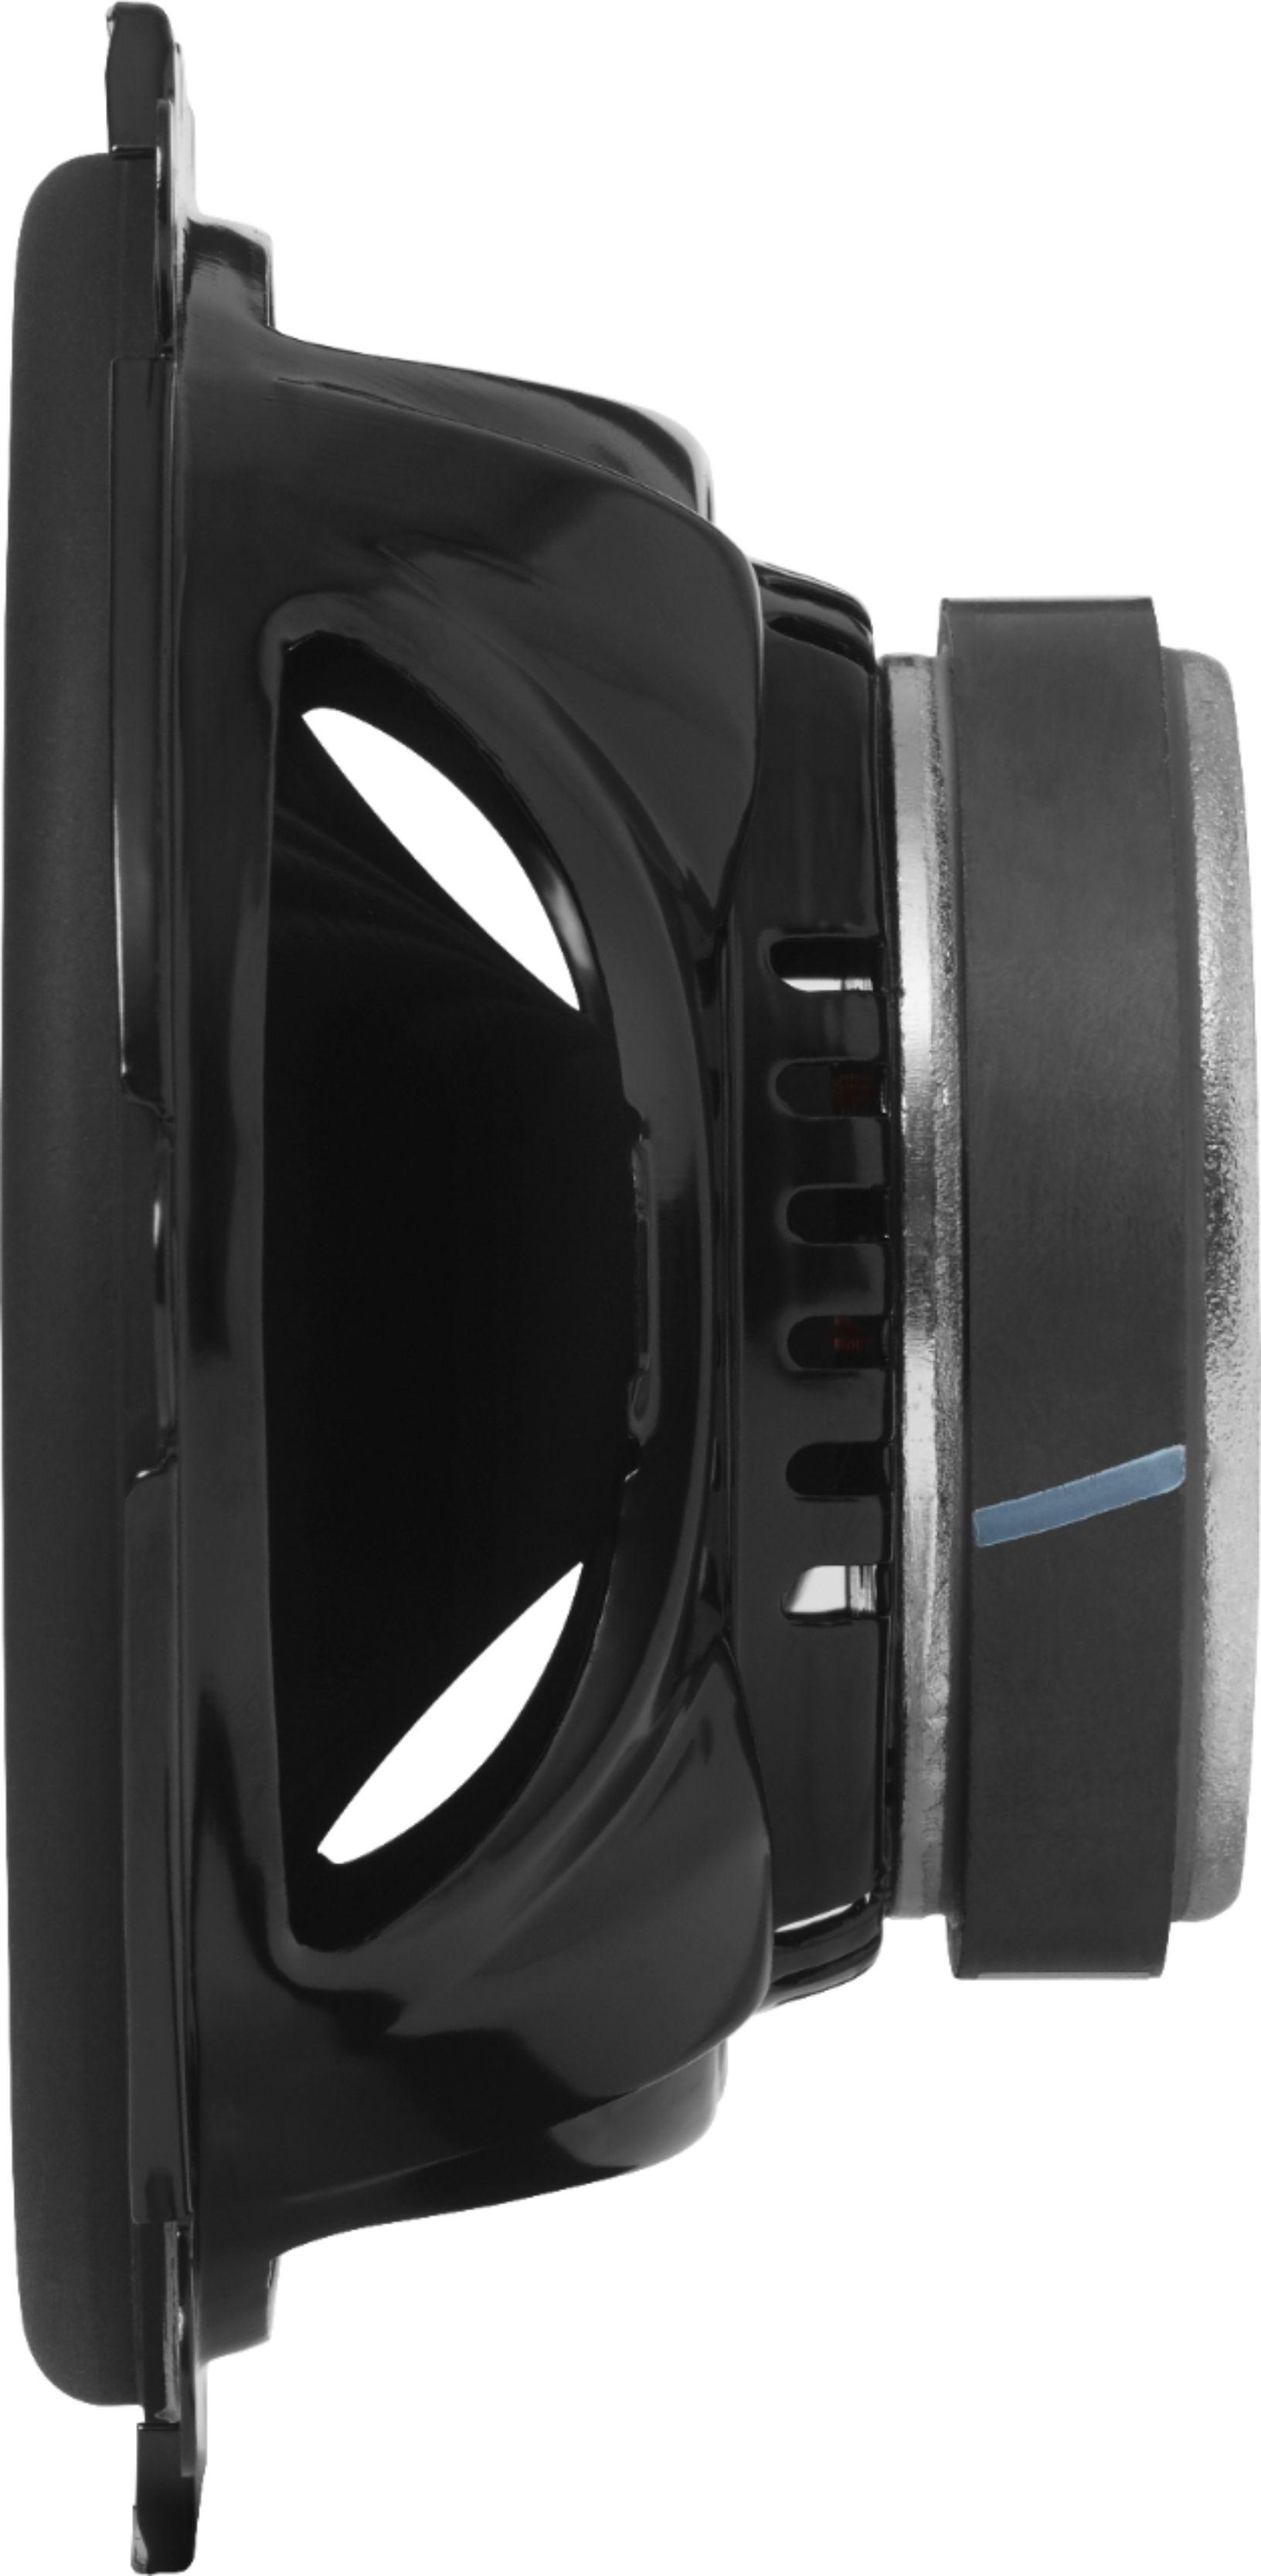 JBL GX Series 6" x 8" / 5" x 2-Way Car Loudspeakers with Polypropylene Cones (Pair) Black GX8628 - Best Buy